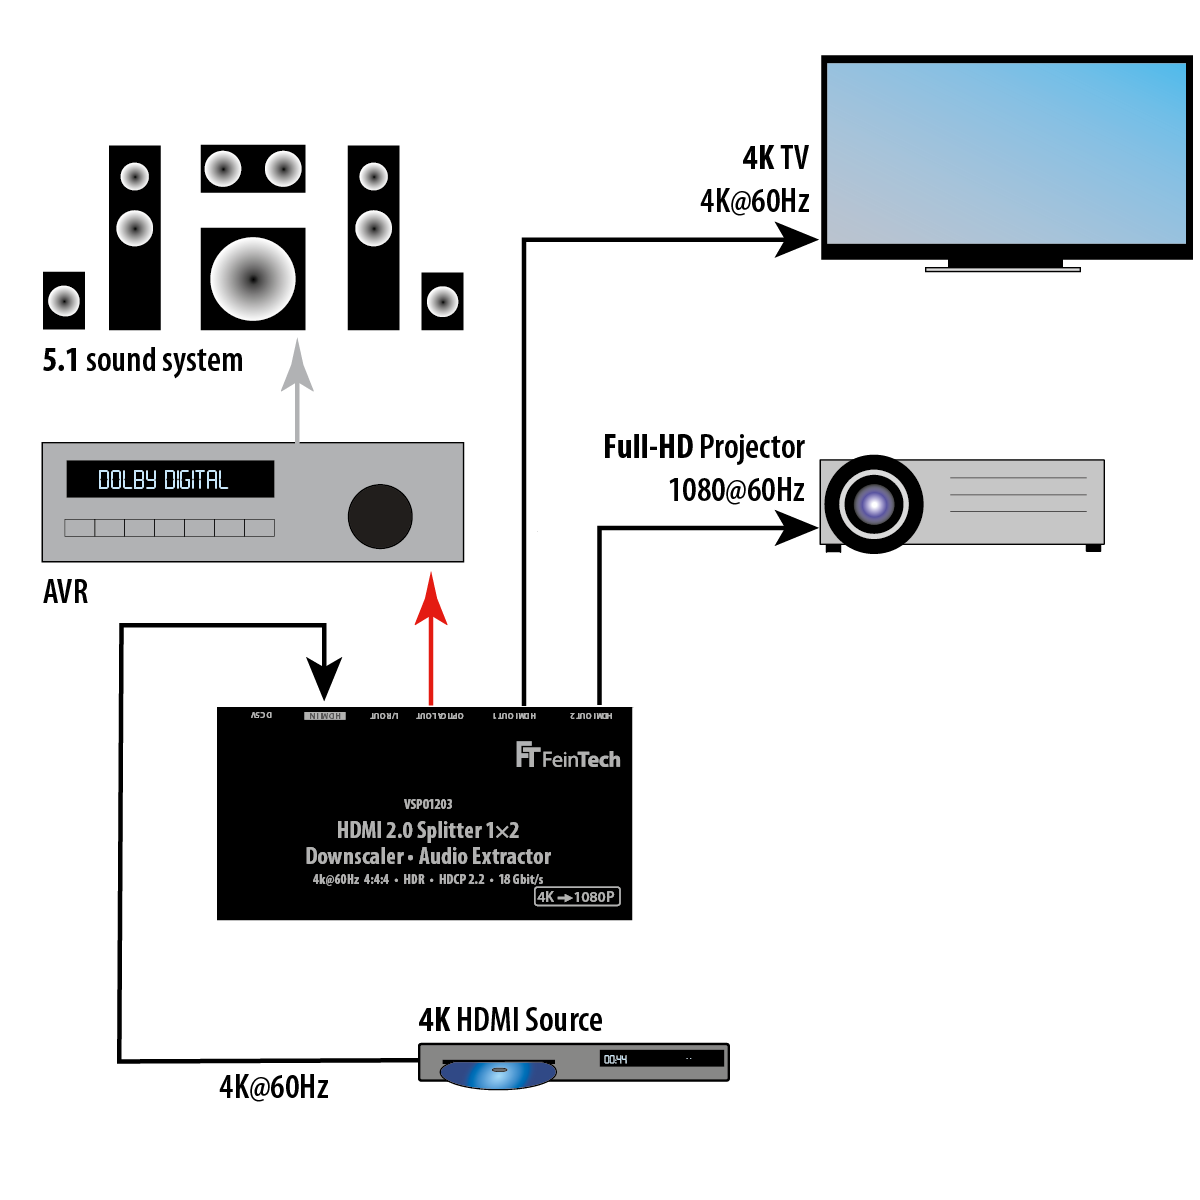 2 mit 1x Verteiler Splitter Extractor HDMI FEINTECH HDMI VSP01203 Audio